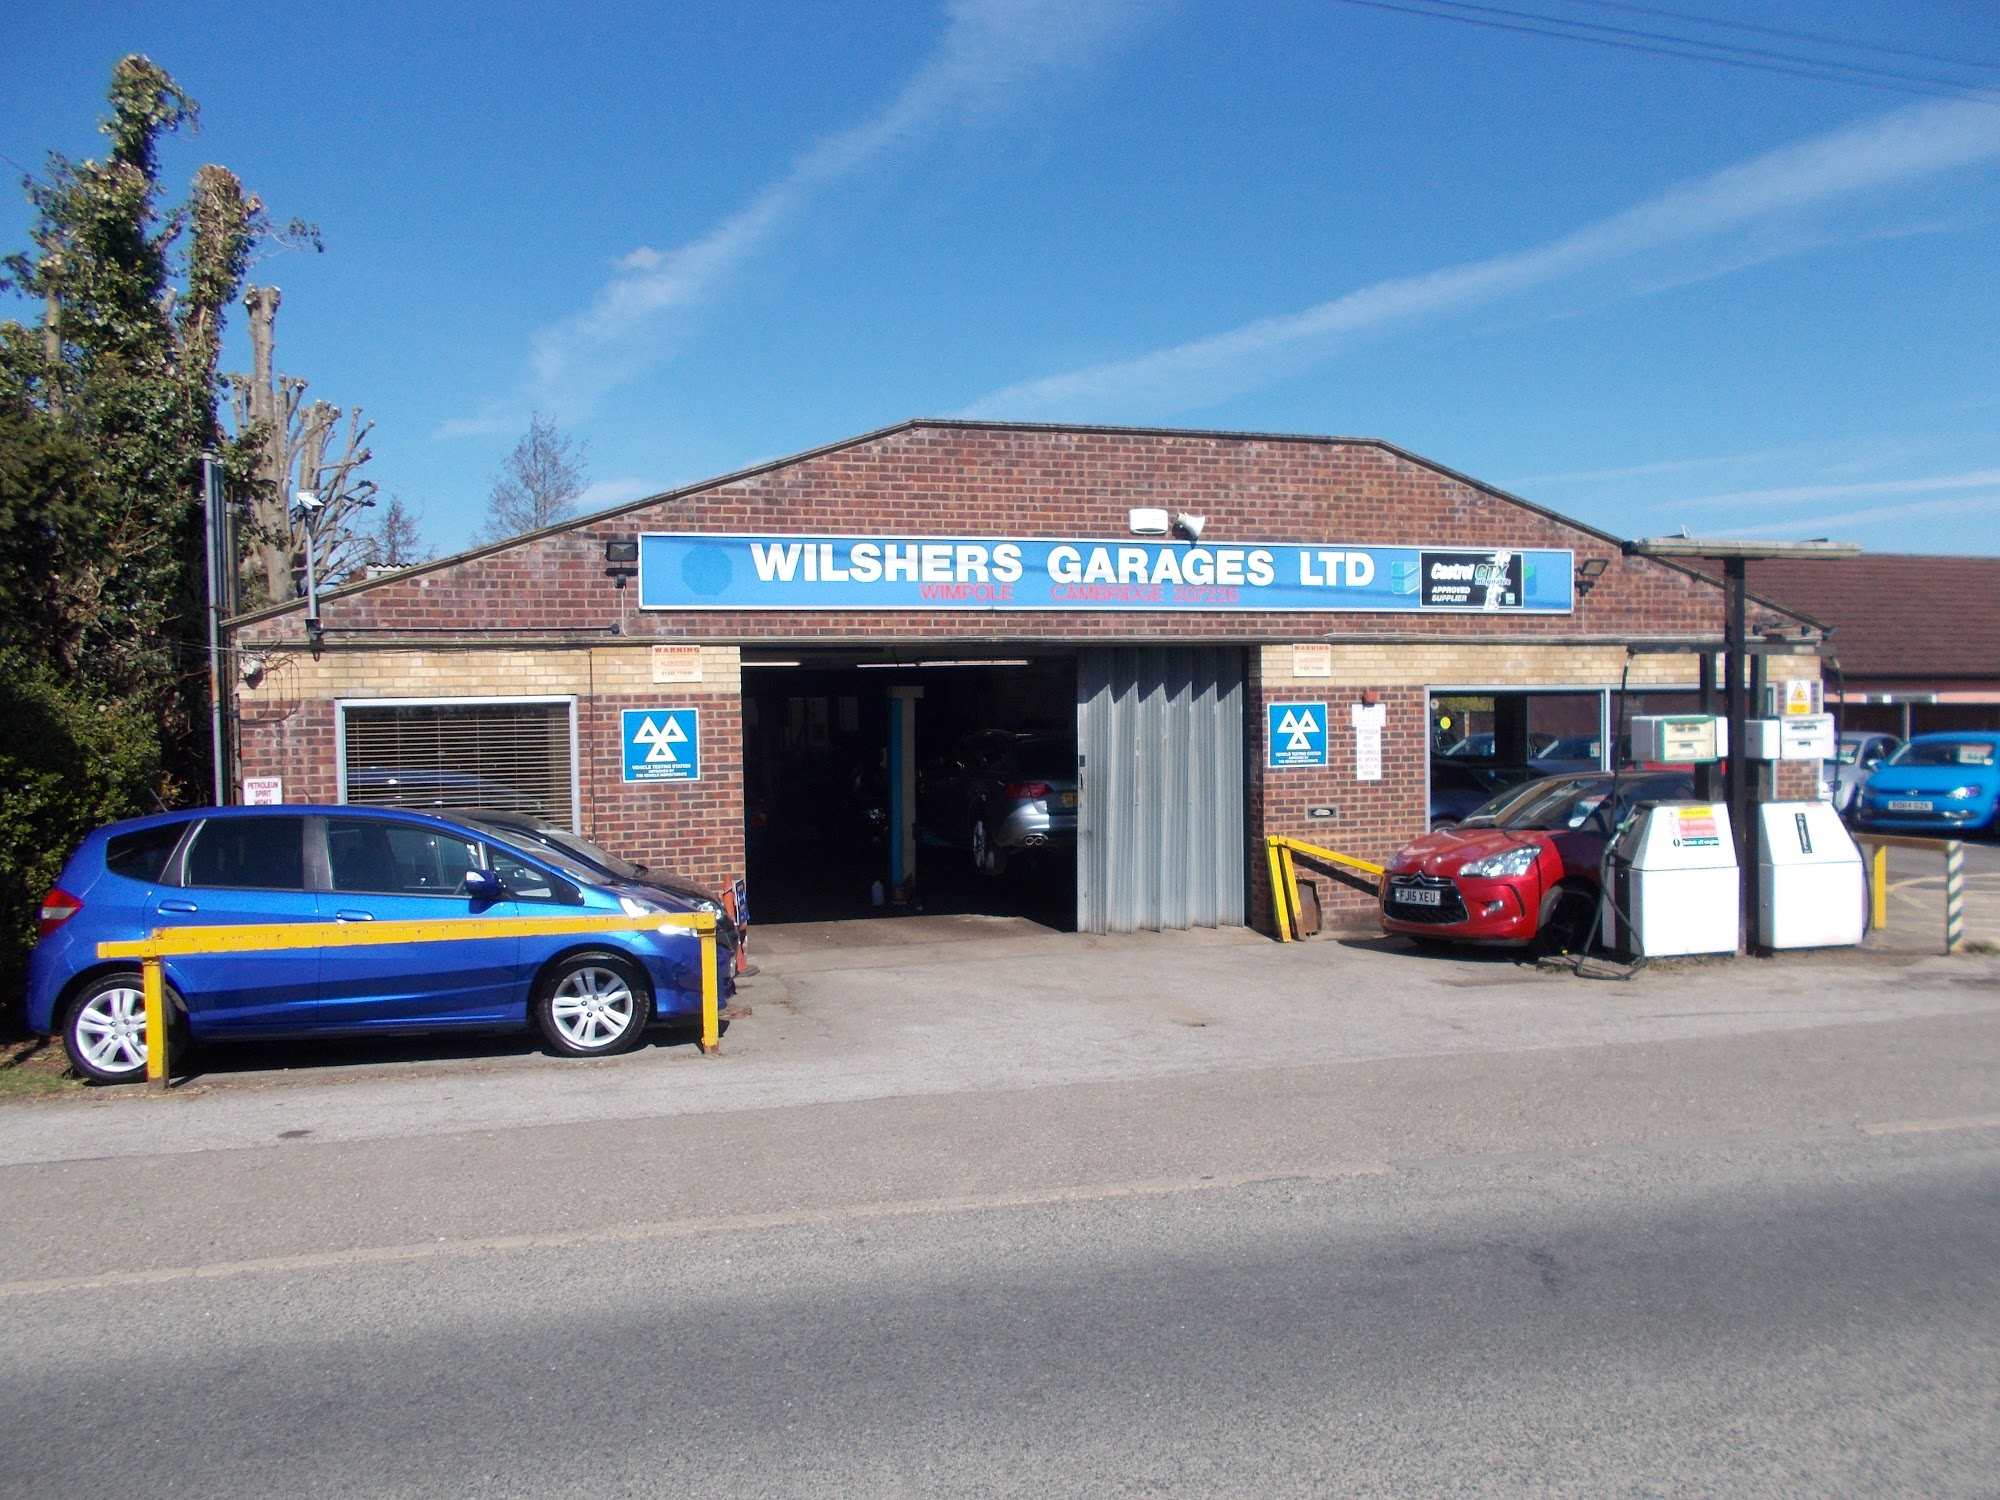 Wilshers Garages Ltd